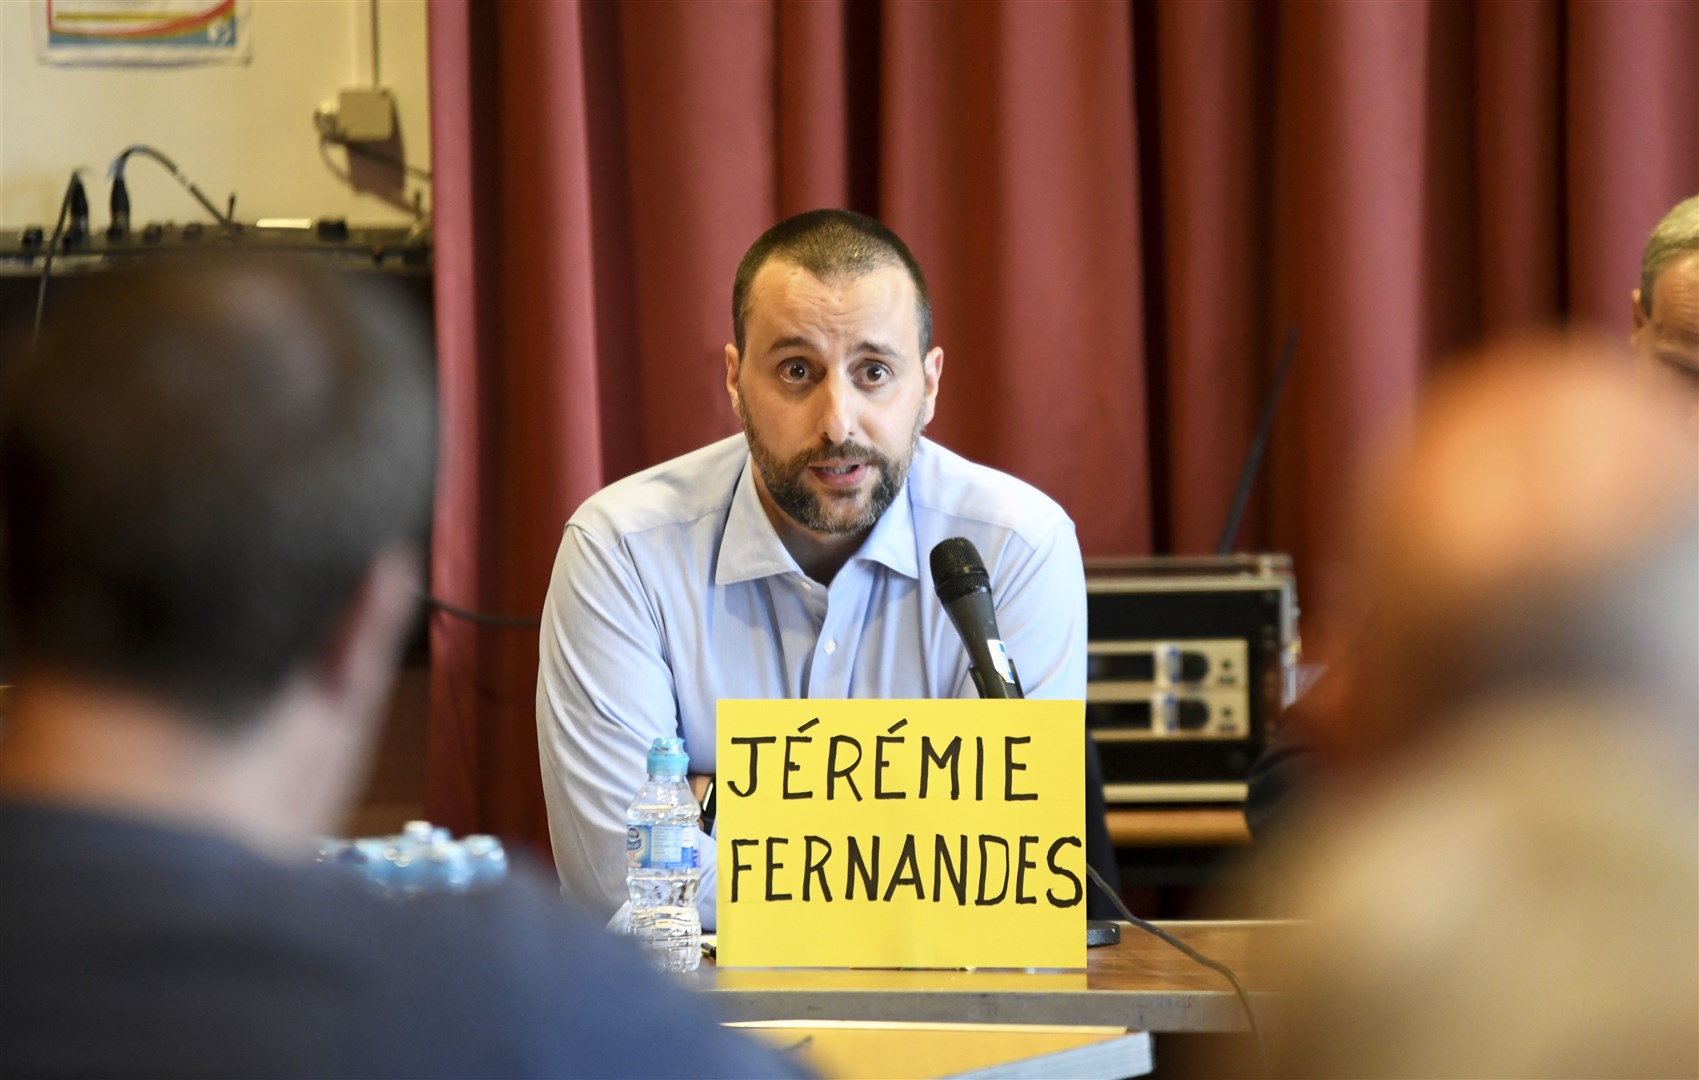 Jérémie Fernandes has written to the 'big five' energy companies.